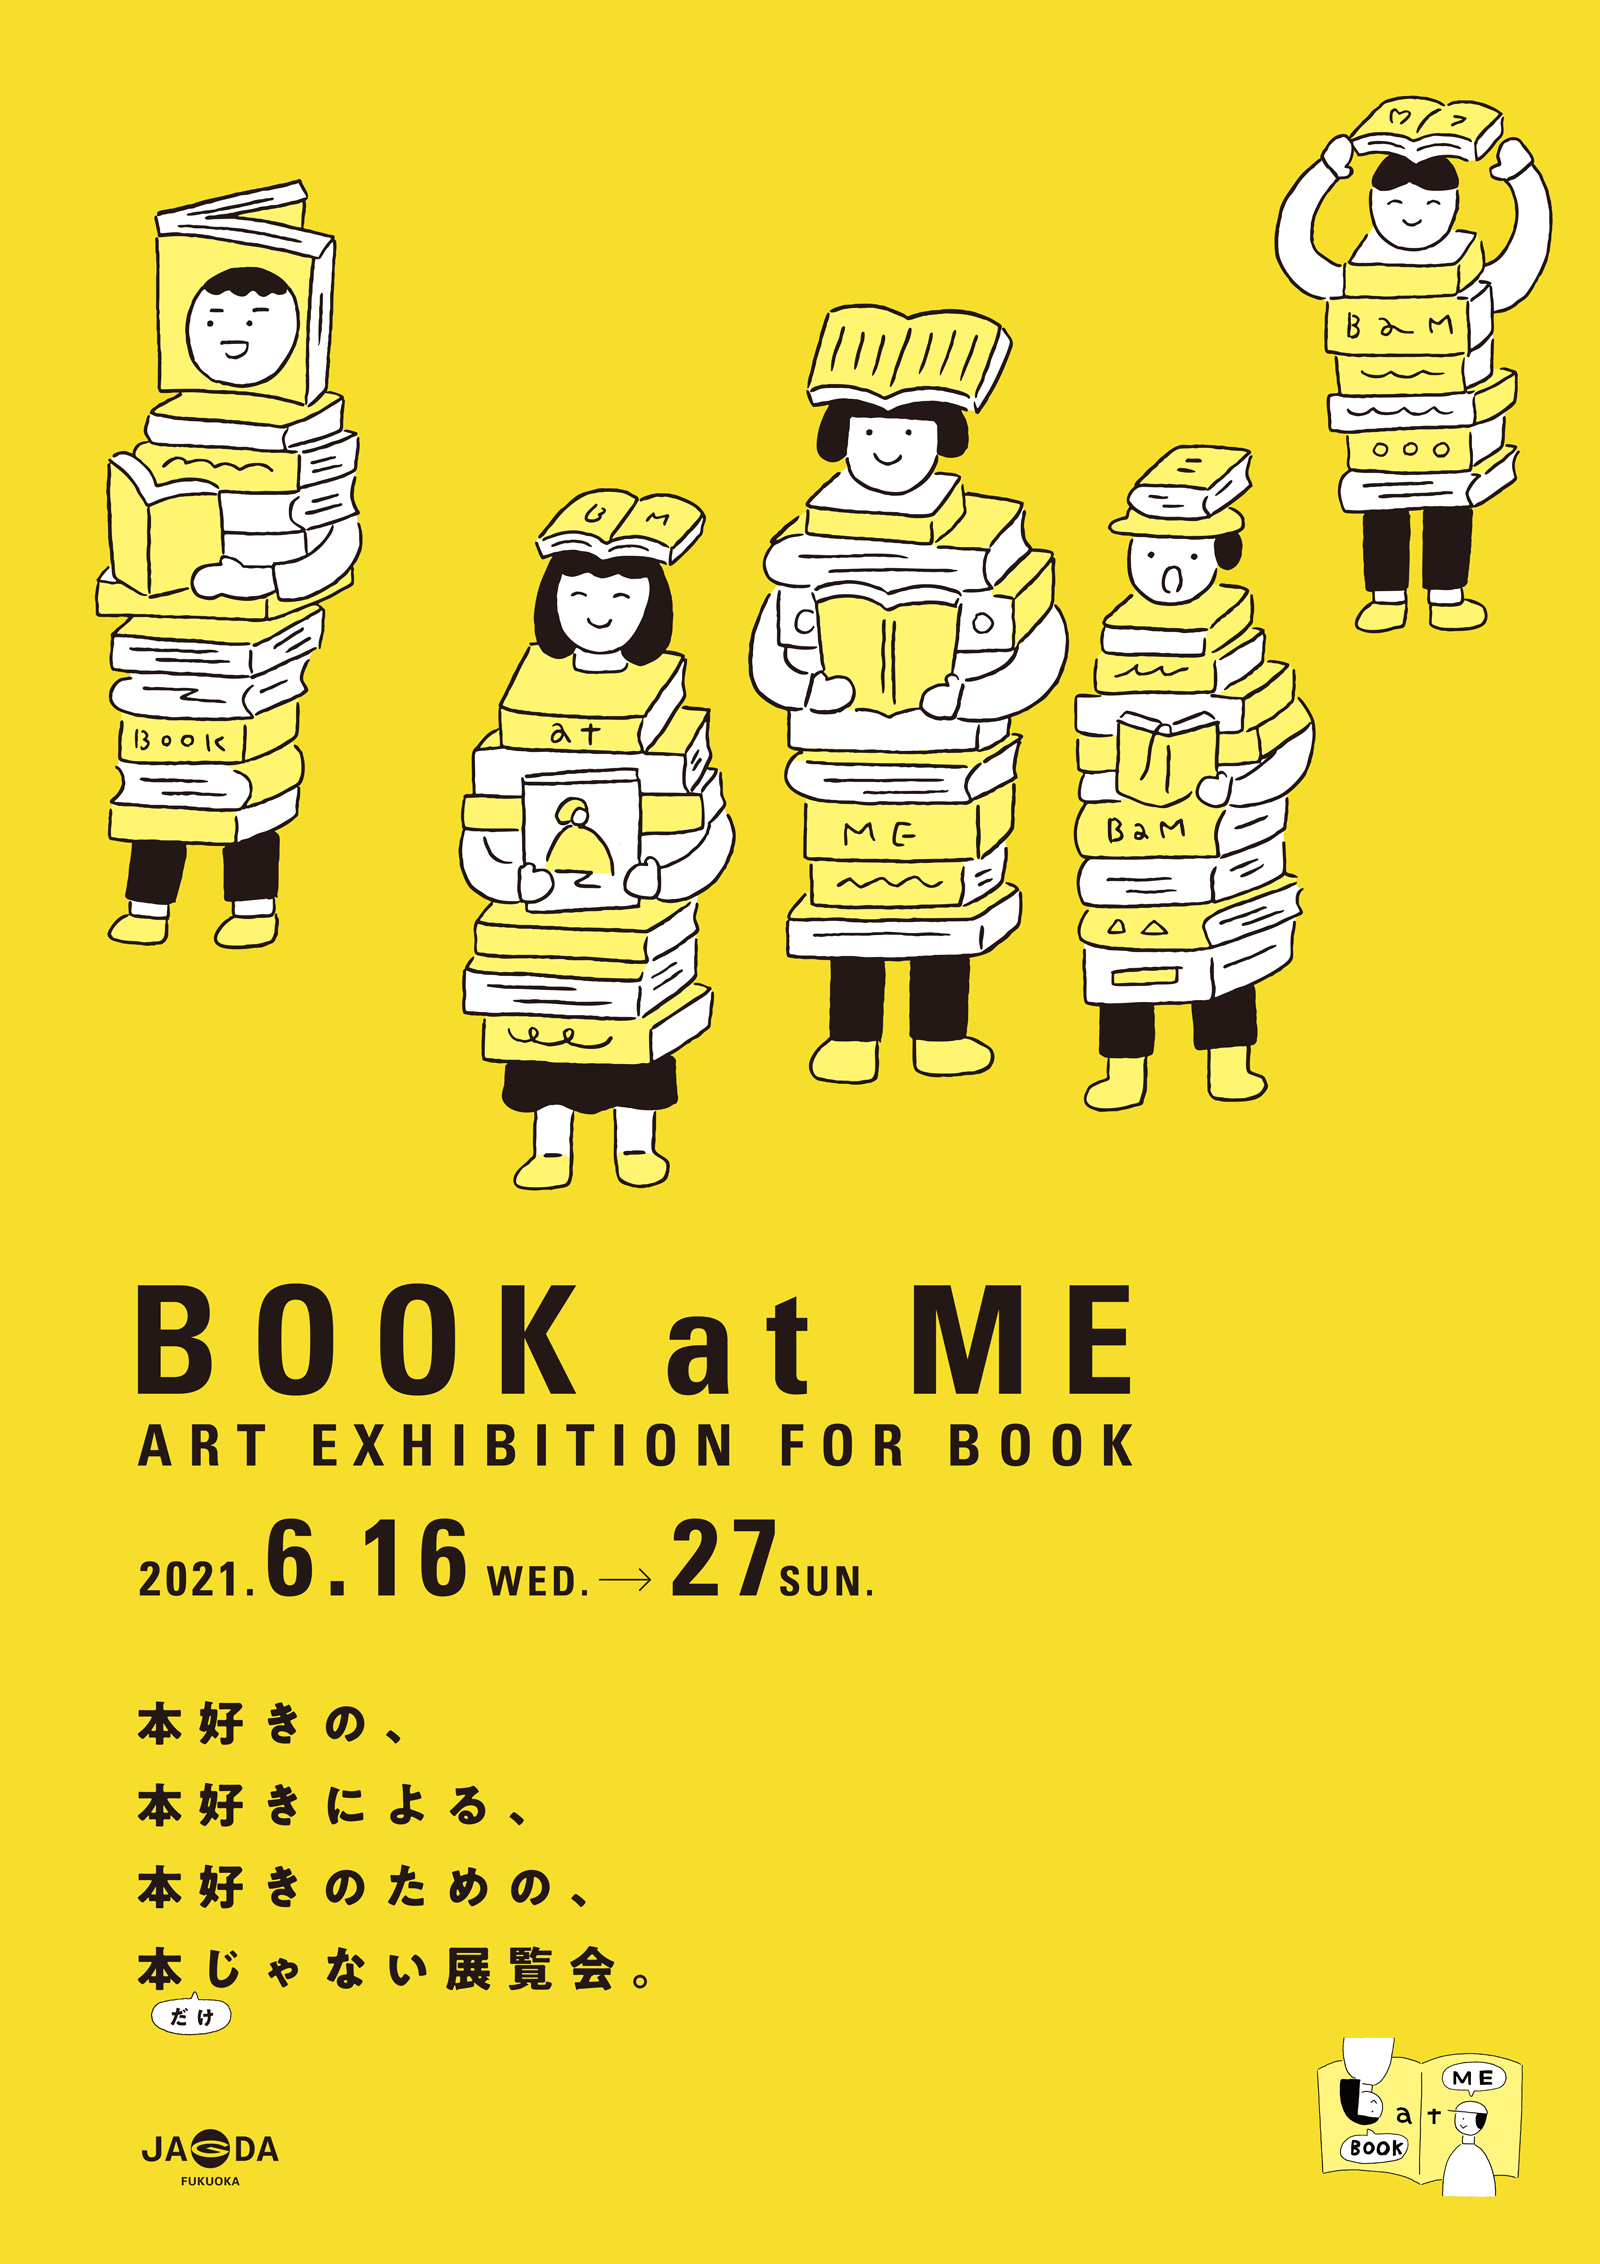 BOOK at ME 2021【JAGDA福岡地区】